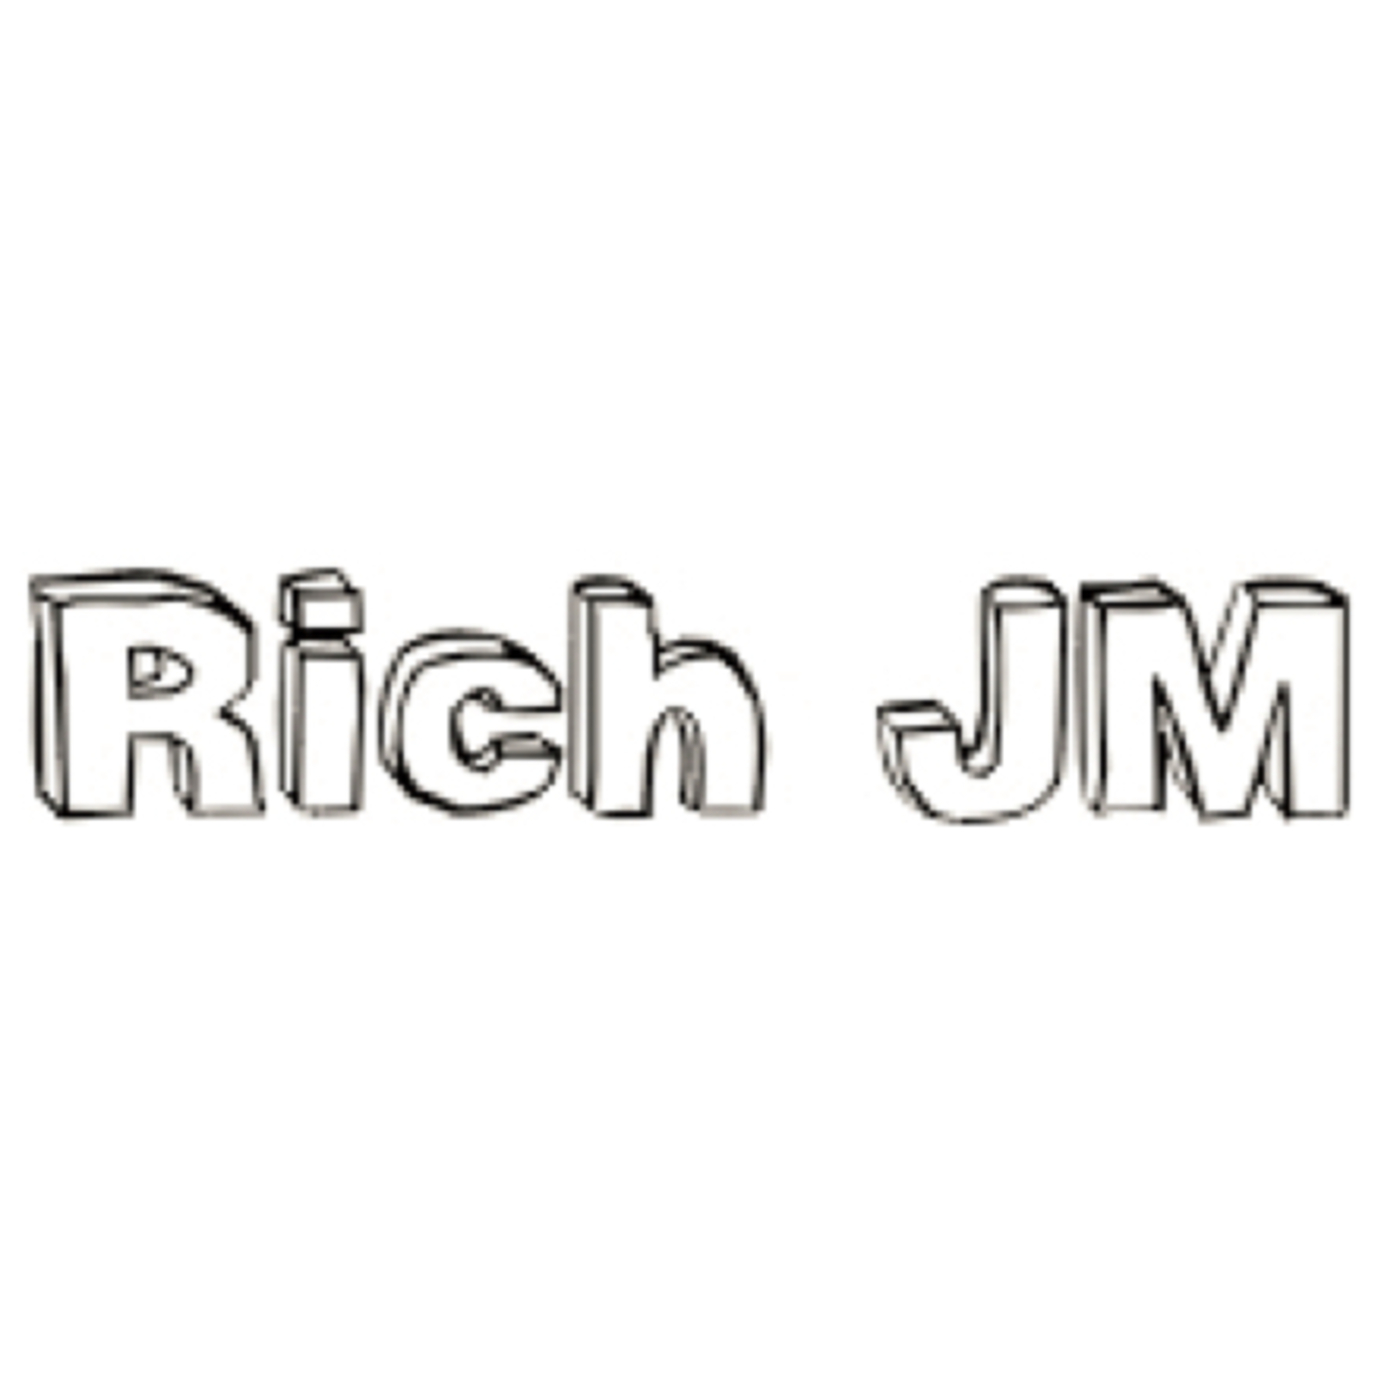 Rich JM's Podcast